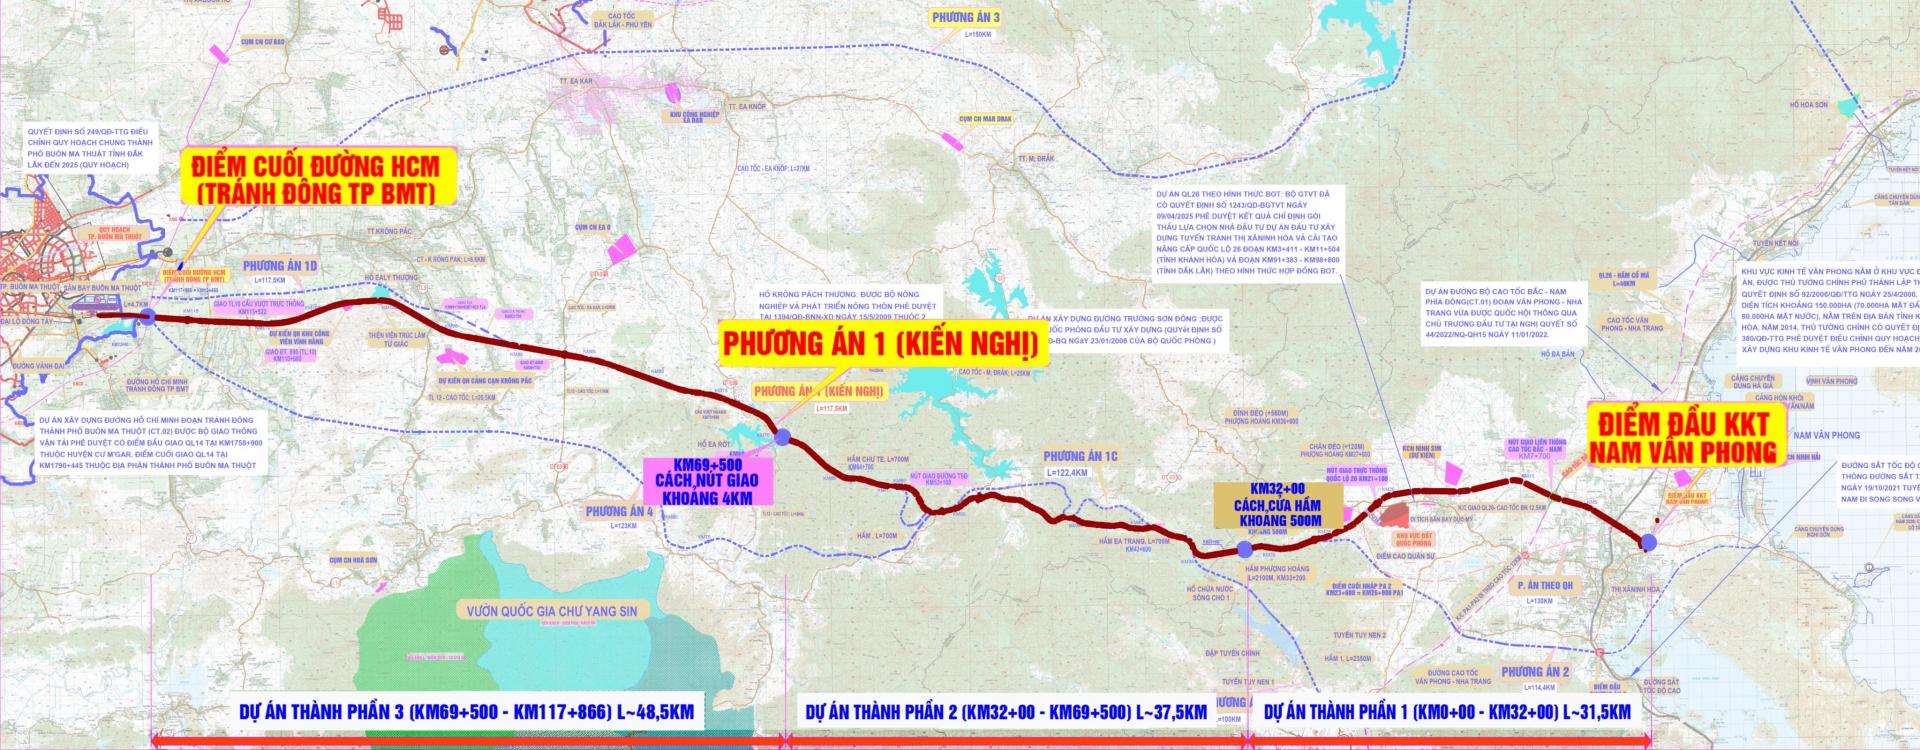 Bộ sưu tập bản đồ đường cao tốc BMT Nha Trang đầy đủ nhất